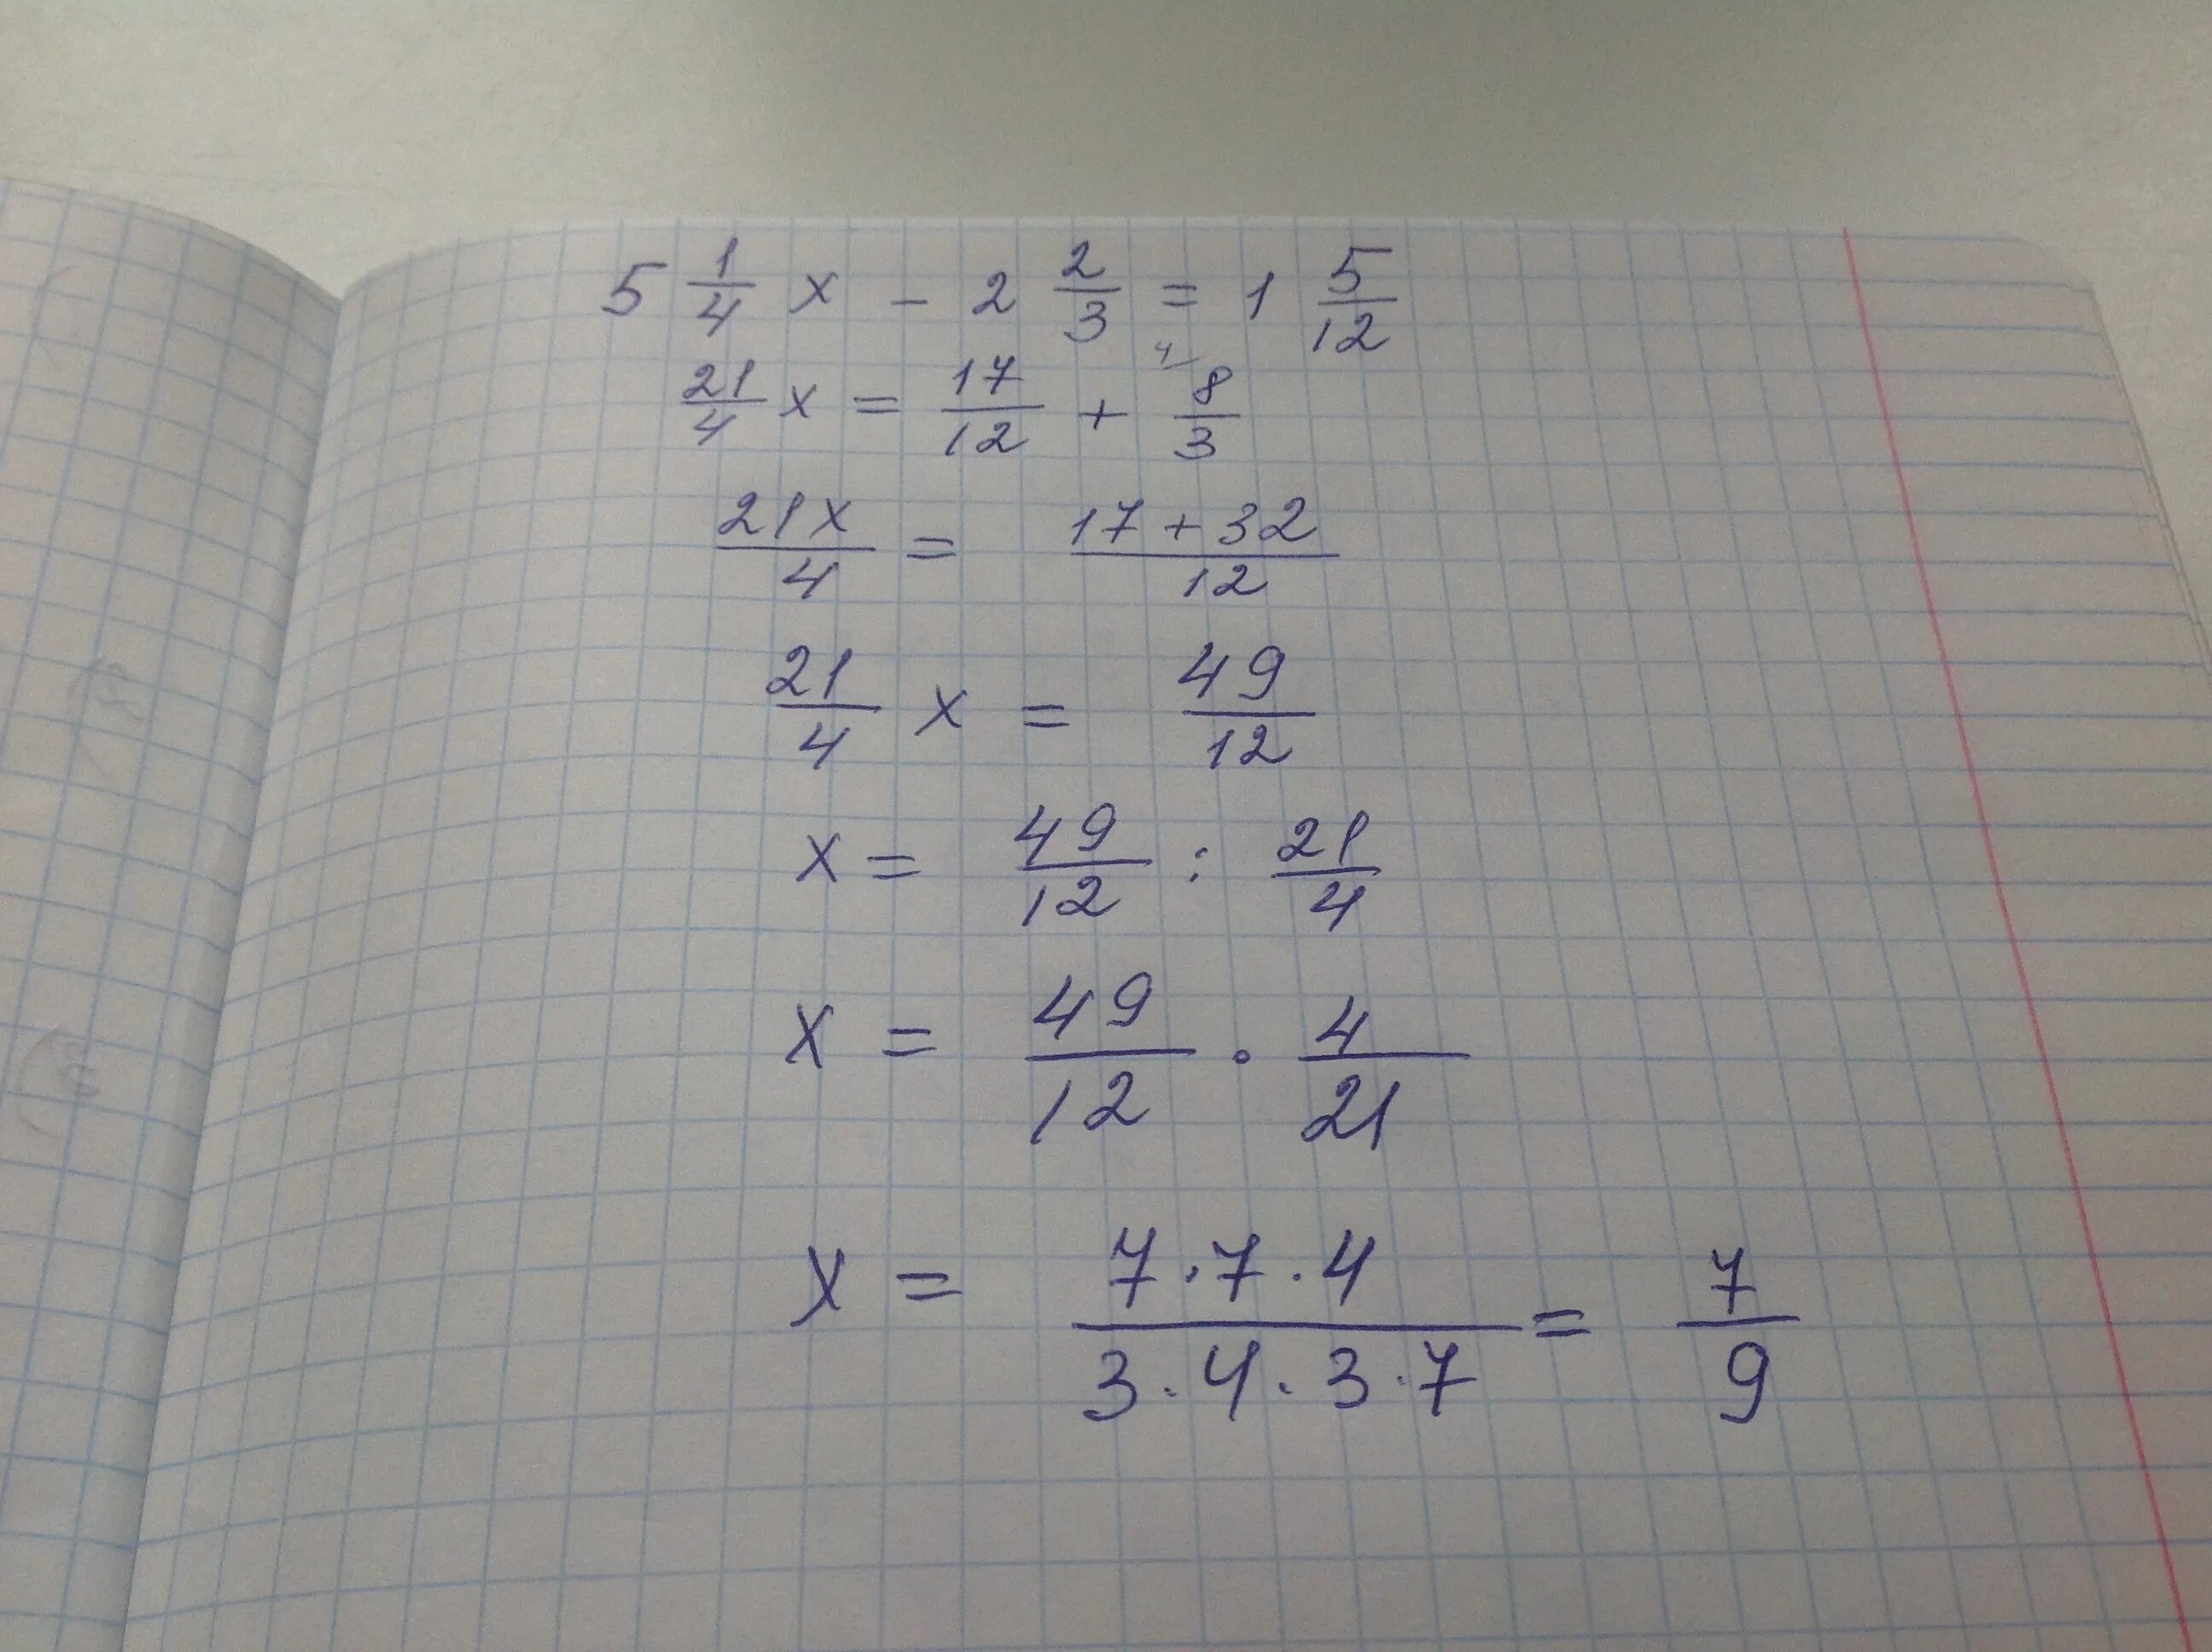 3x/5-x+1/2=1. X-4/7x=1, 2/5 решение. 4x+4/3x 2+2x-1. 2 2/9 X 7 1/5 + 11/12 X 7 1/5 - 7 1/5 Х 1 3/4.